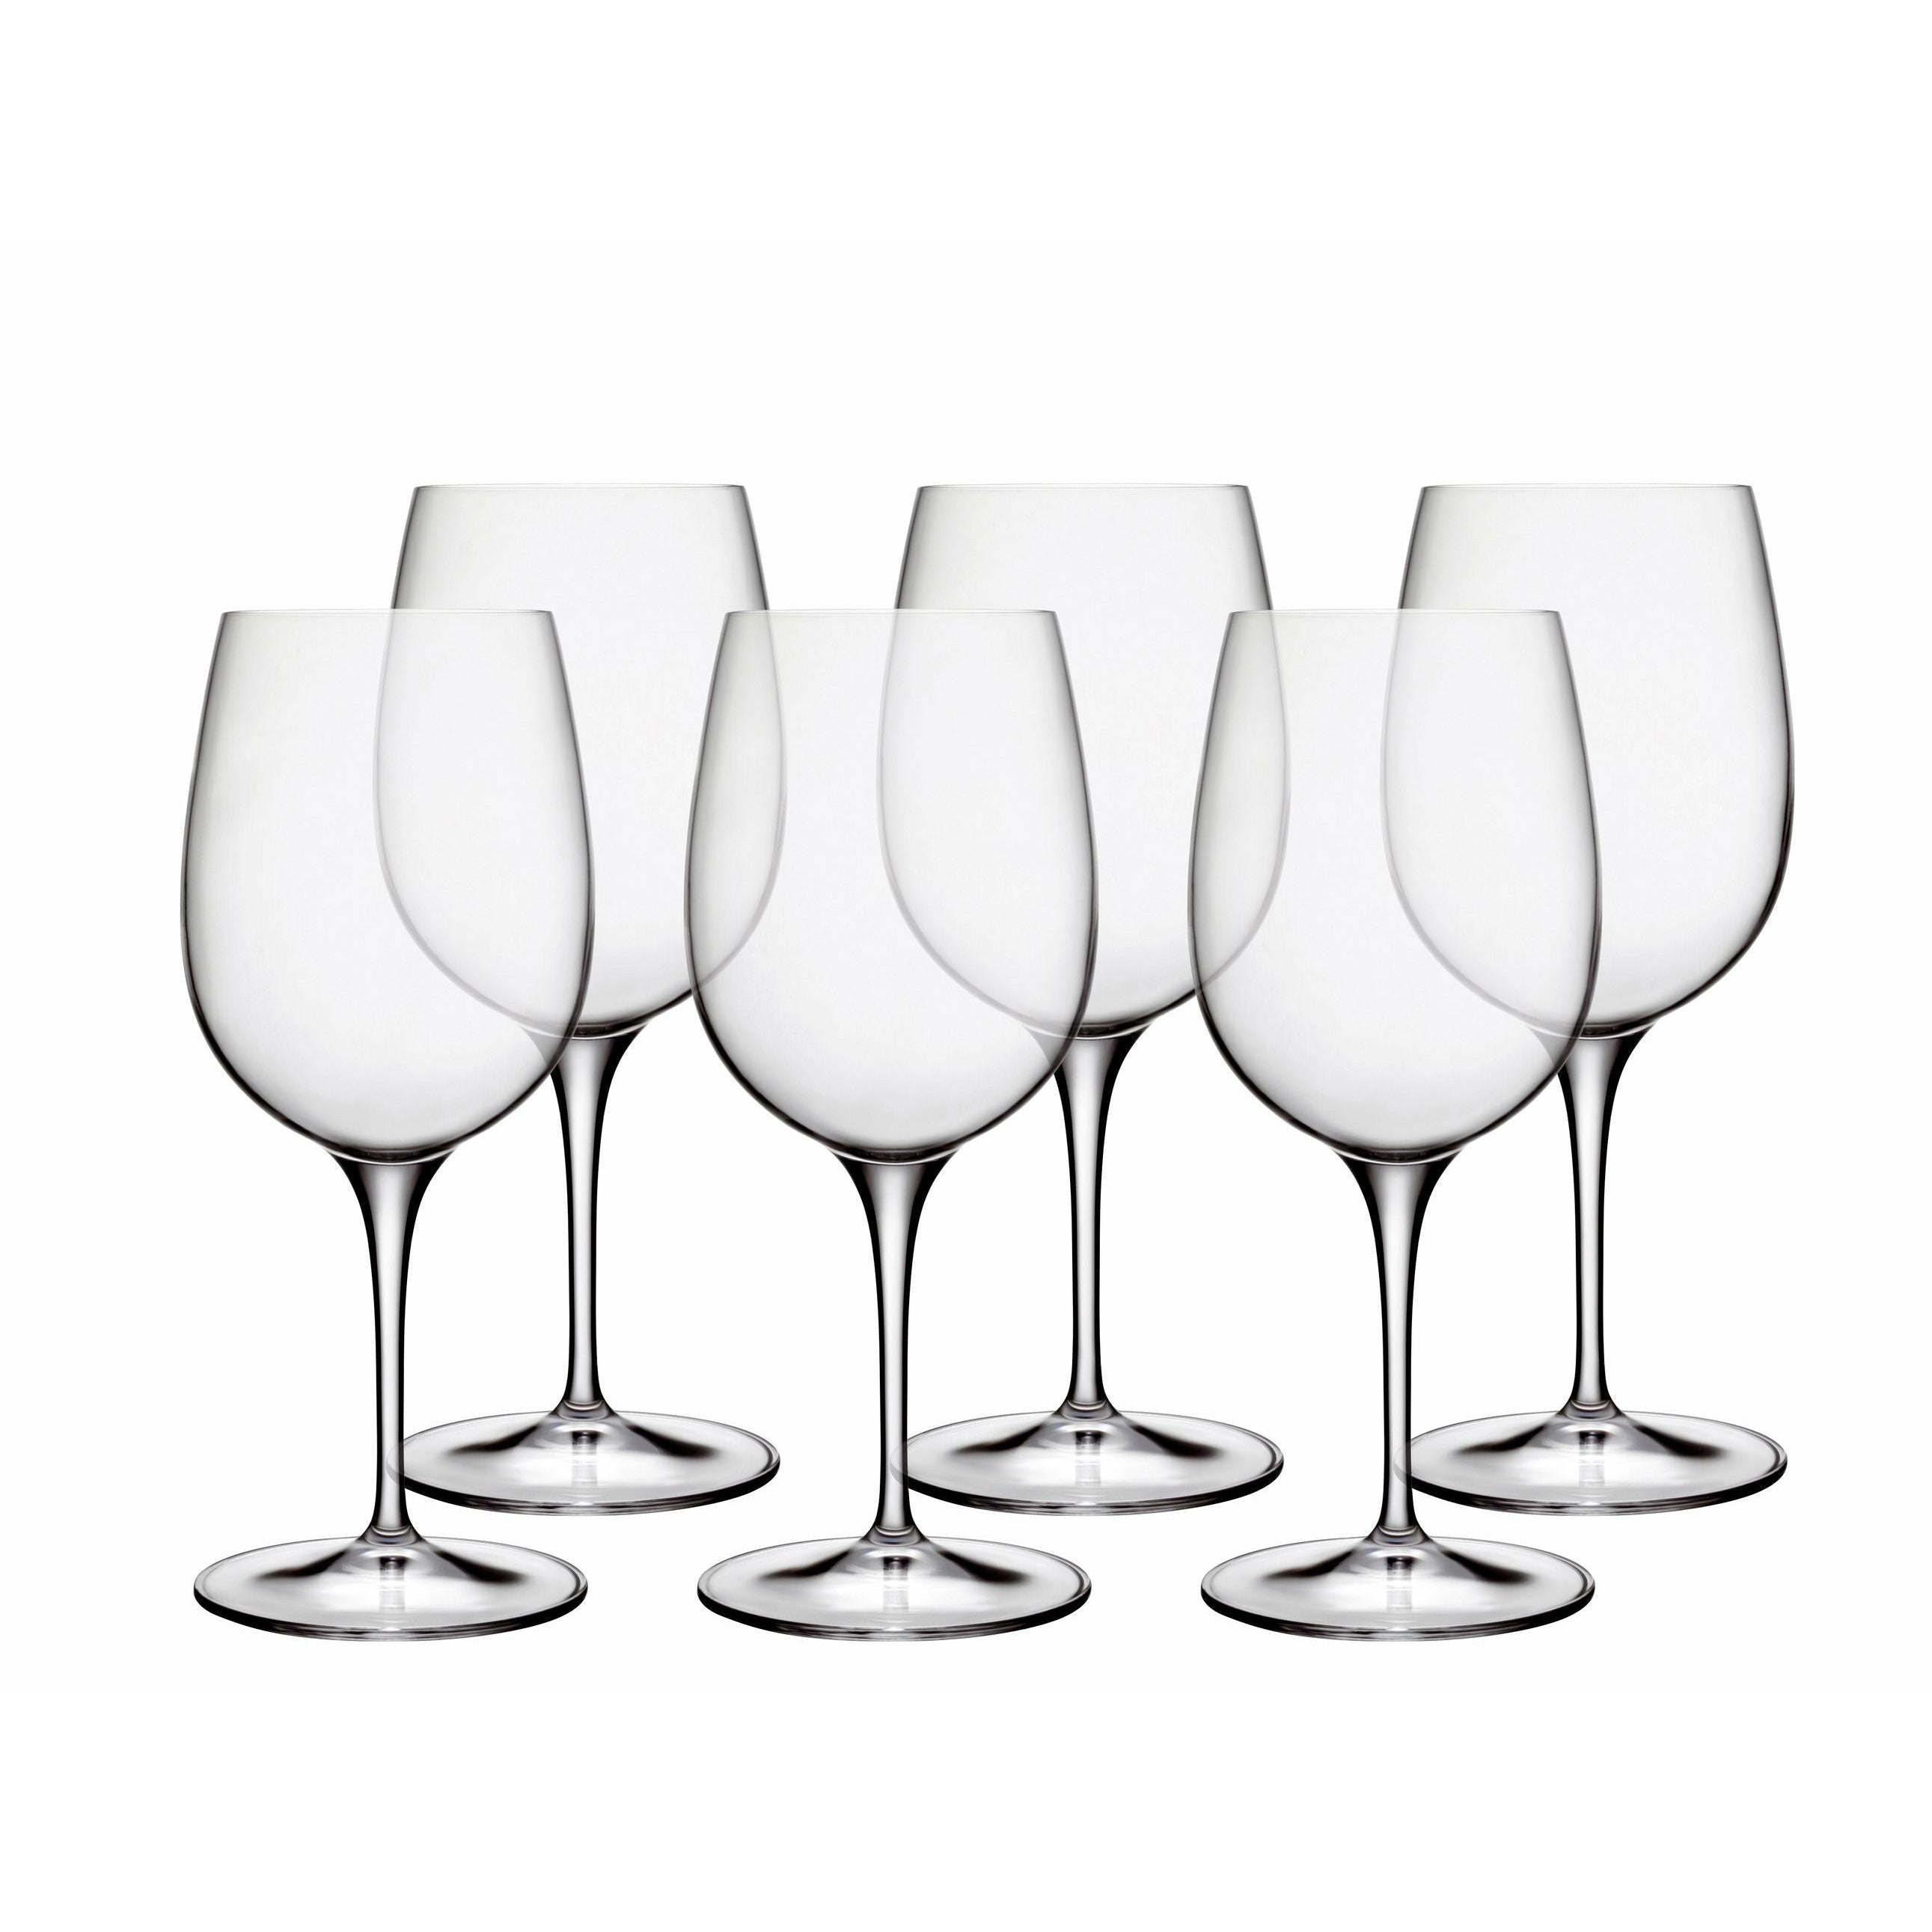 LUIGI BORMIOLI Palace White Wine Glass, sada 6